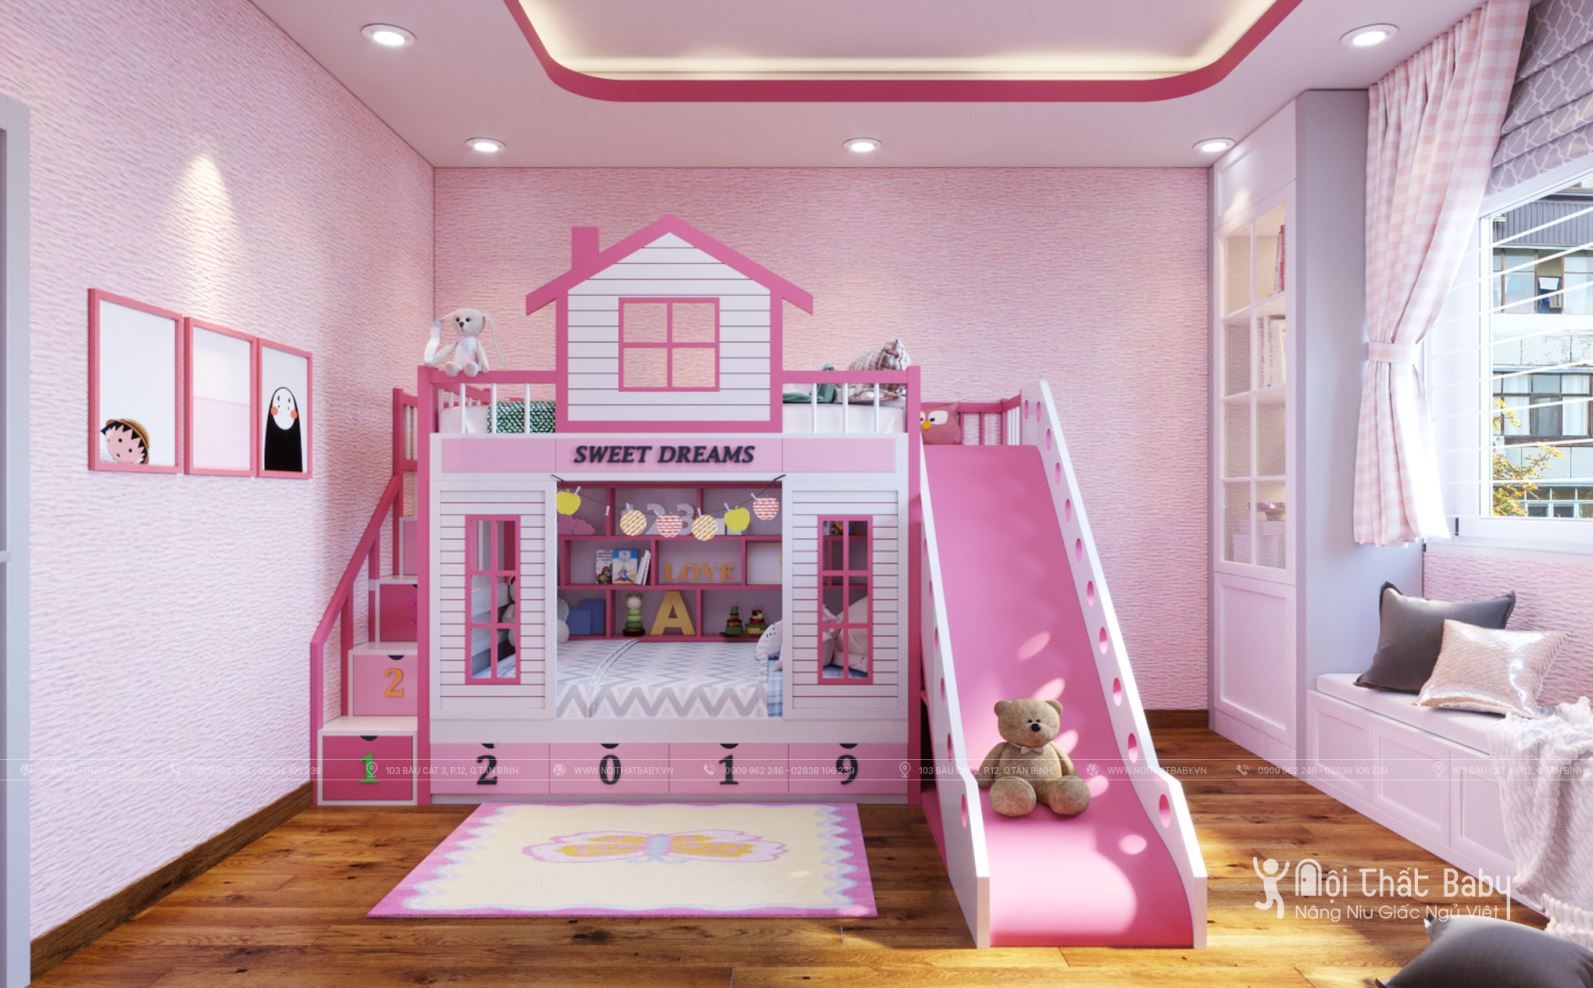 Một giường tầng đẹp cho bé gái năm 2020 mang đến cho con bạn sự thuận tiện và thoải mái. Những mẫu giường tầng có thiết kế độc đáo và sang trọng là lựa chọn hoàn hảo cho những căn phòng không gian chật hẹp. Sản phẩm được thiết kế với các loại vật liệu chất lượng và kiểu dáng đa dạng. Chắc chắn sẽ thu hút sự quan tâm của bạn khi trang trí cho phòng ngủ bé yêu của bạn.